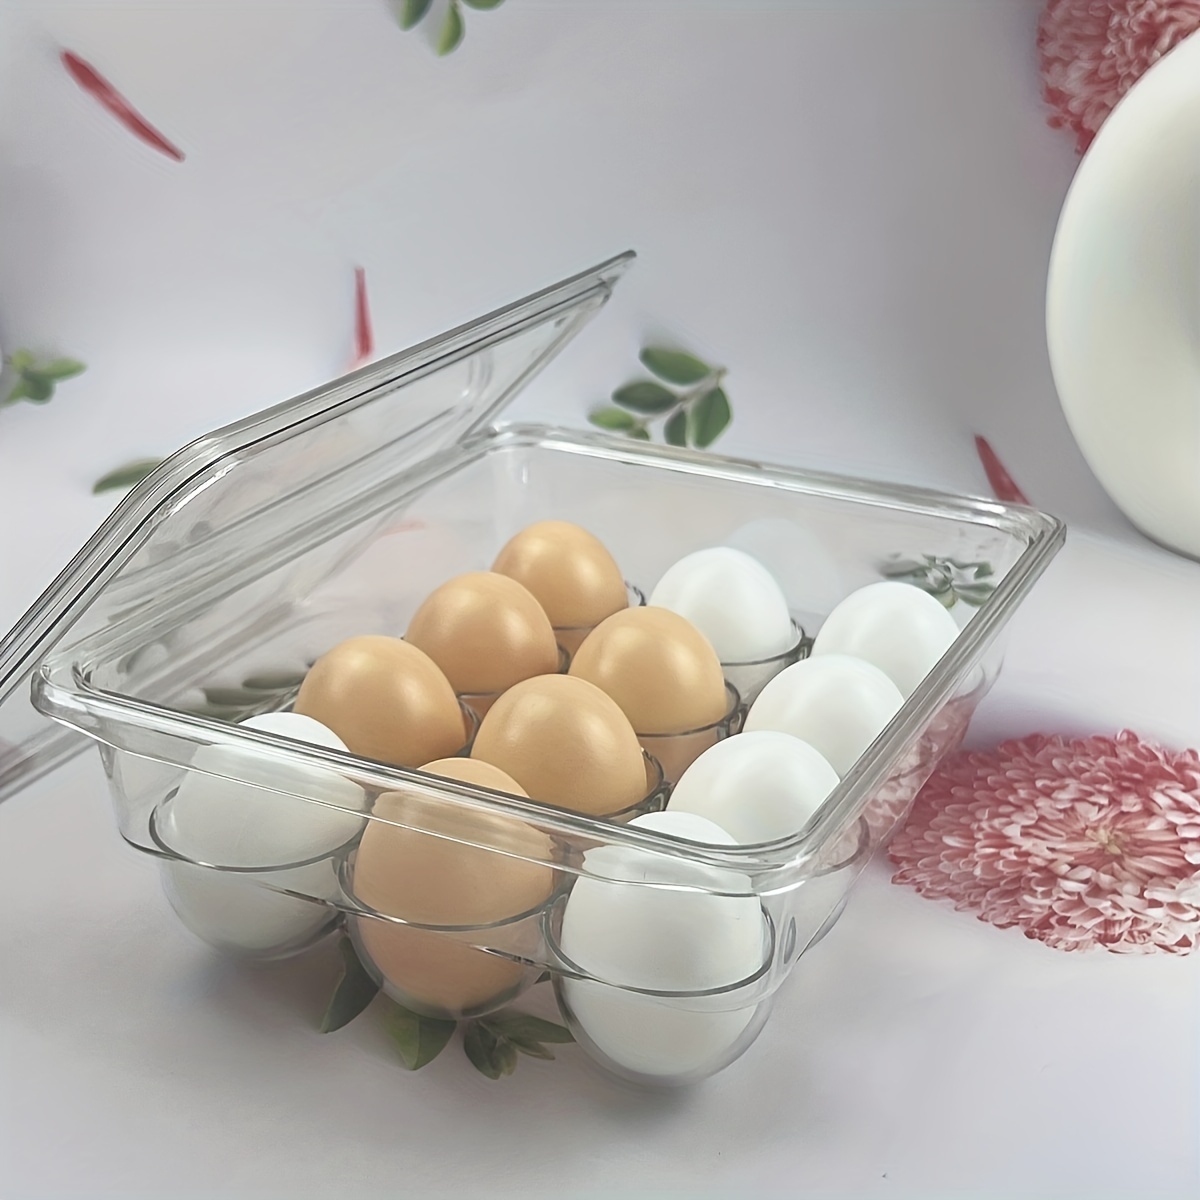 Pinguin-Eierhalter für hartgekochte Eier, Eierbehälter, Eierkartons, Eier-Organizer für Kühlschrank